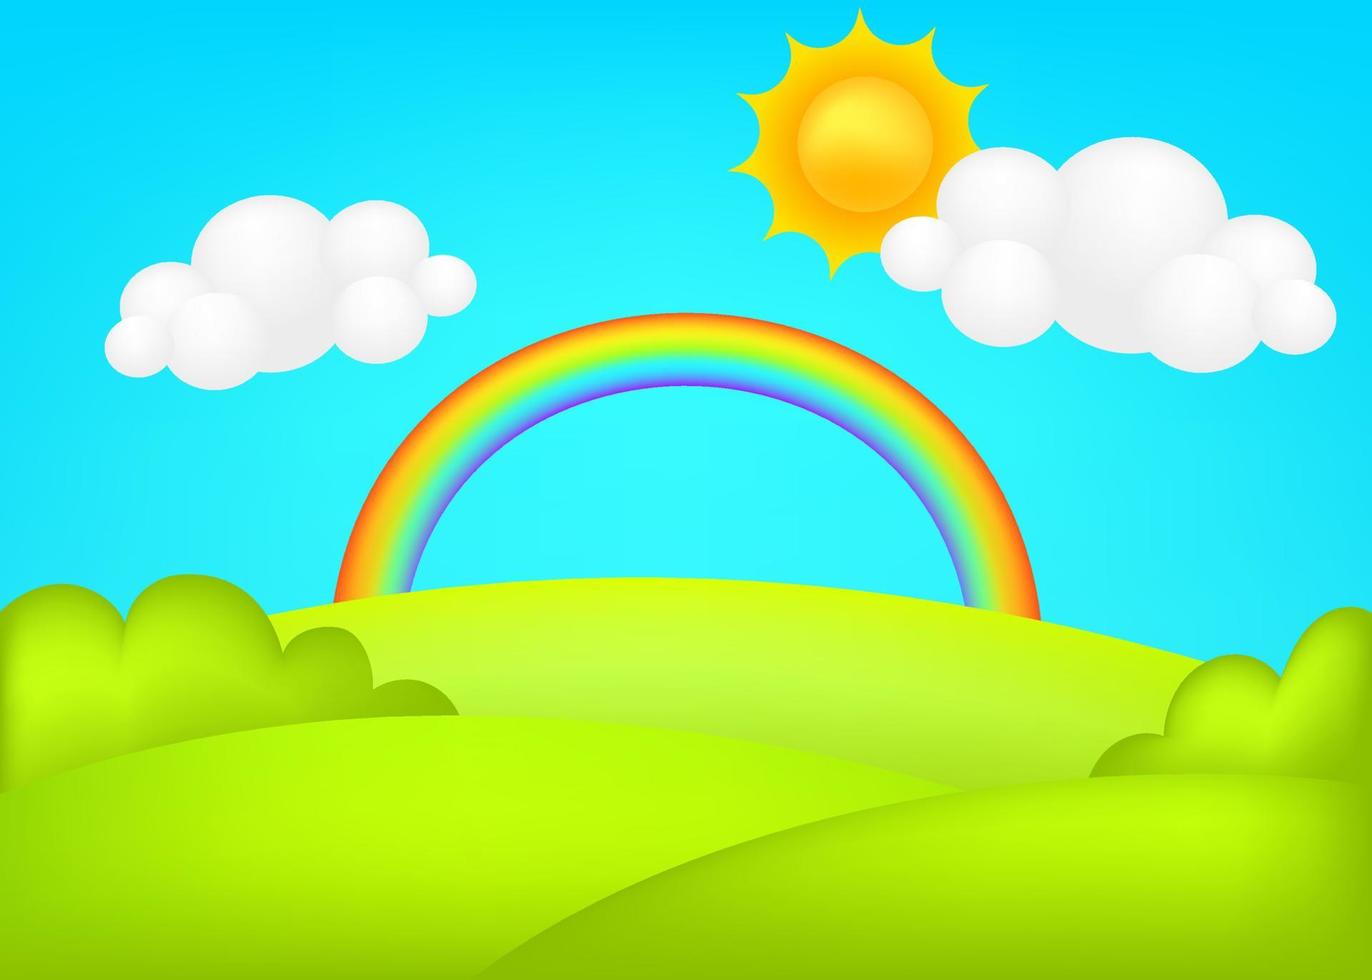 pradera 3d ilustración vectorial. fantástico paisaje con arco iris en el fondo de los niños del valle verde. colorido paisaje lindo con arco iris, pradera verde primaveral, cielo azul, sol, nube para sitios infantiles. vector